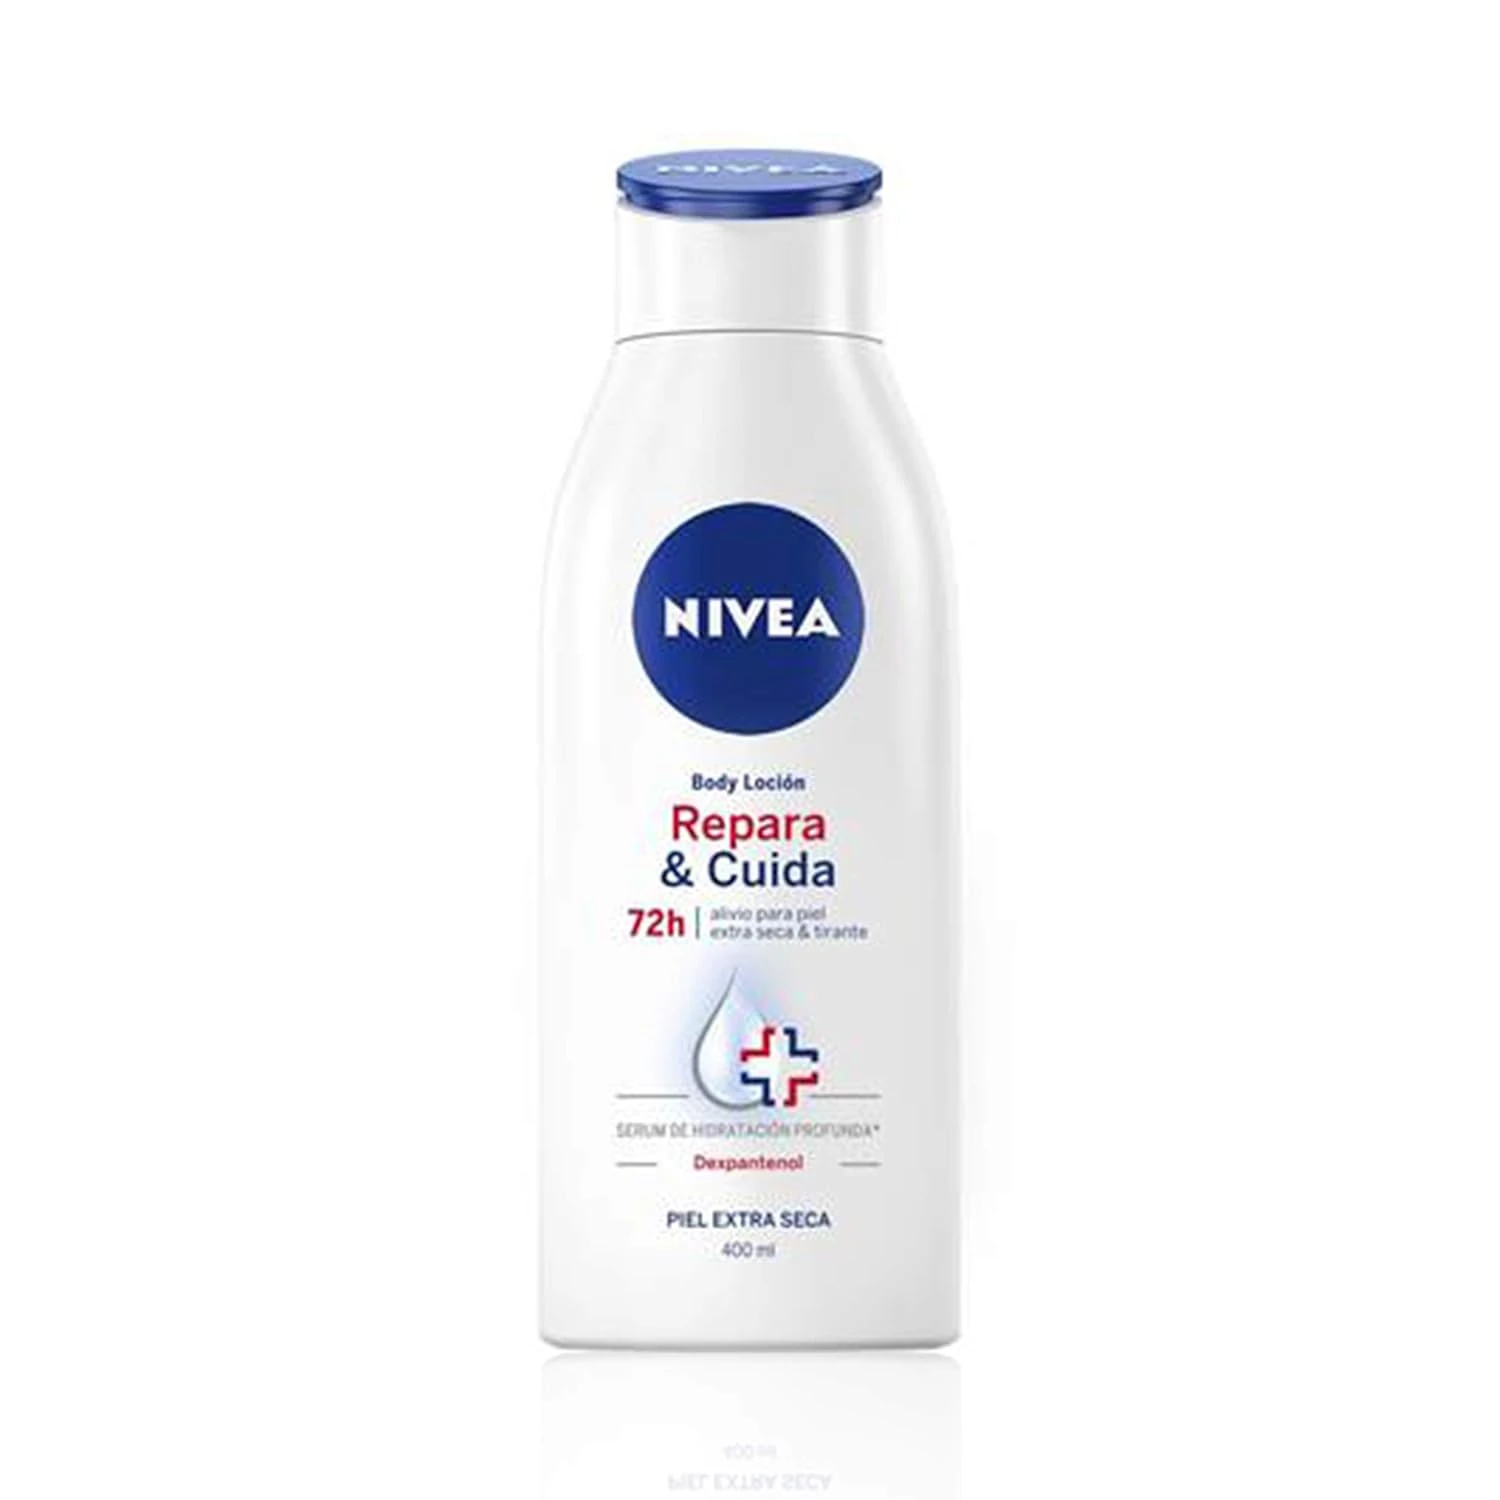 NIVEA Repara Cuida Body Locion 1 x 400 ml locion corporal para el cuidado de la piel muy seca y sensible 72 h de alivio crema hidratante